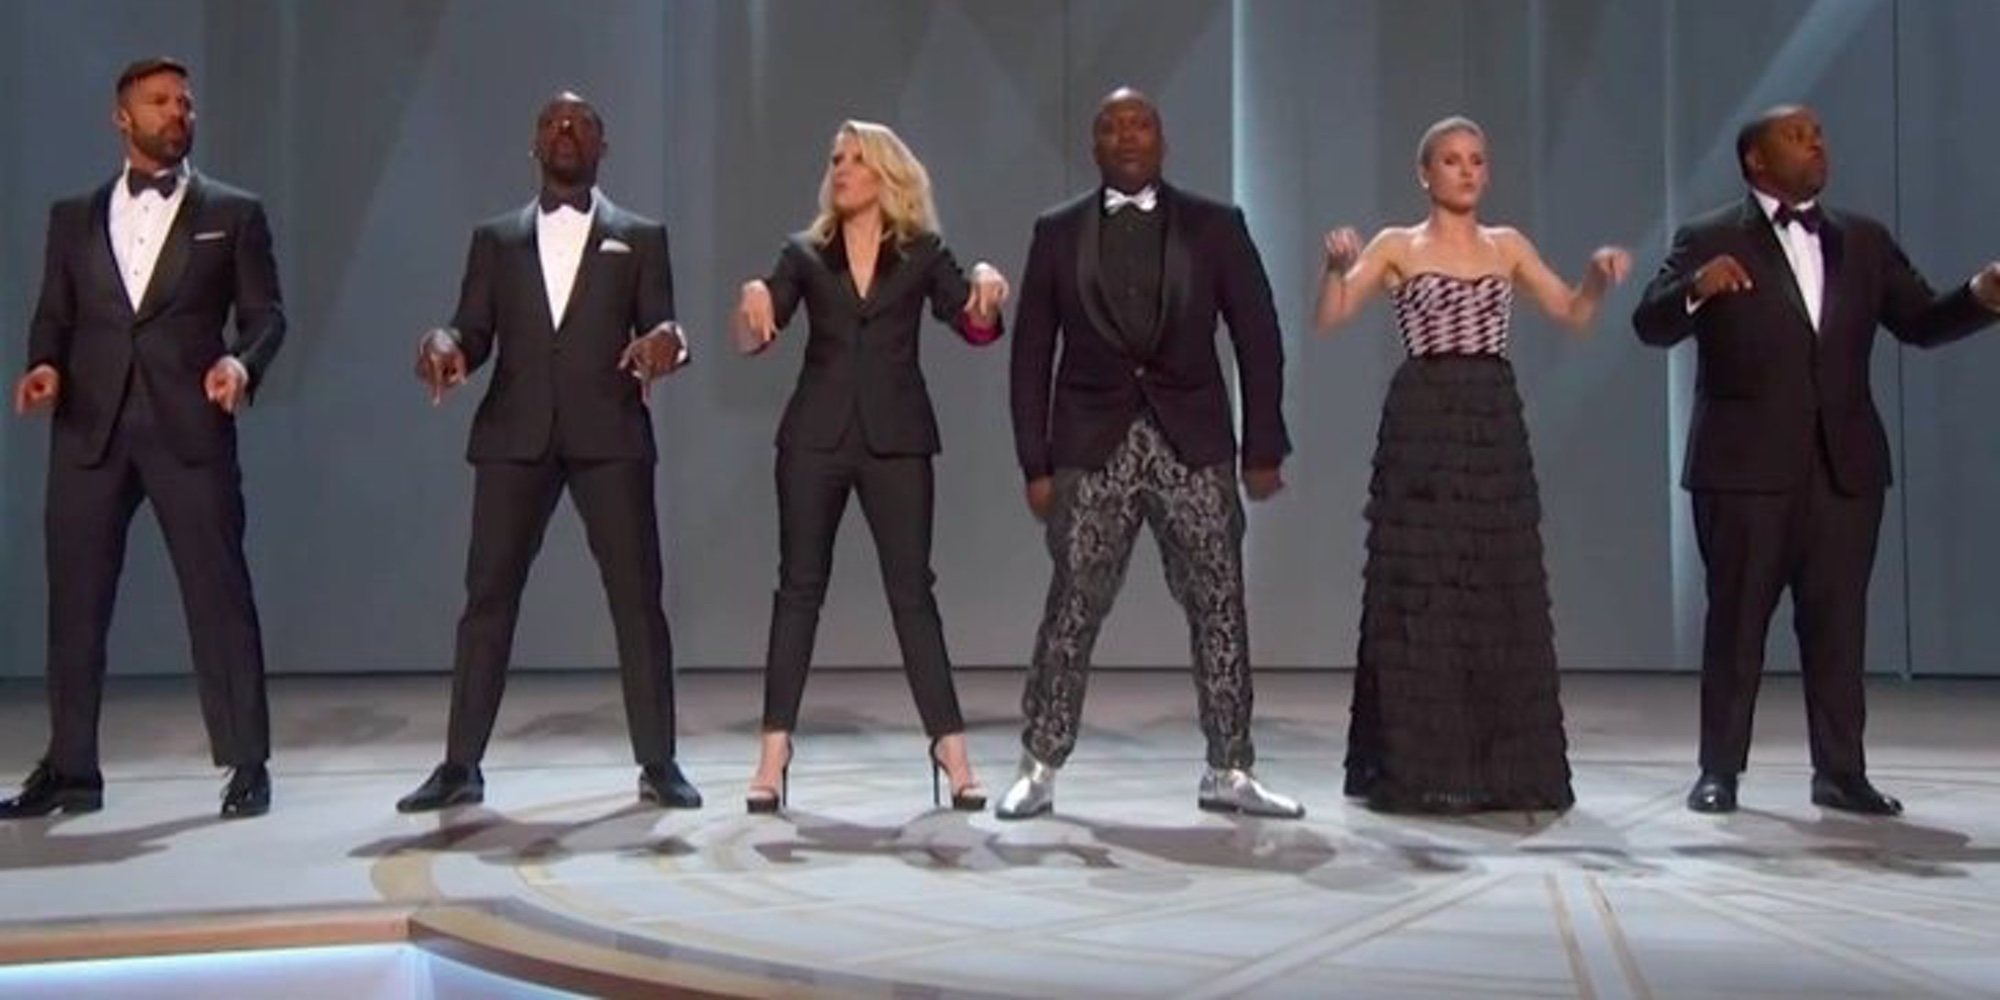 La actuación inicial de los Premios Emmy 2018 que apoya la diversidad racial: "Somos una raza en común"